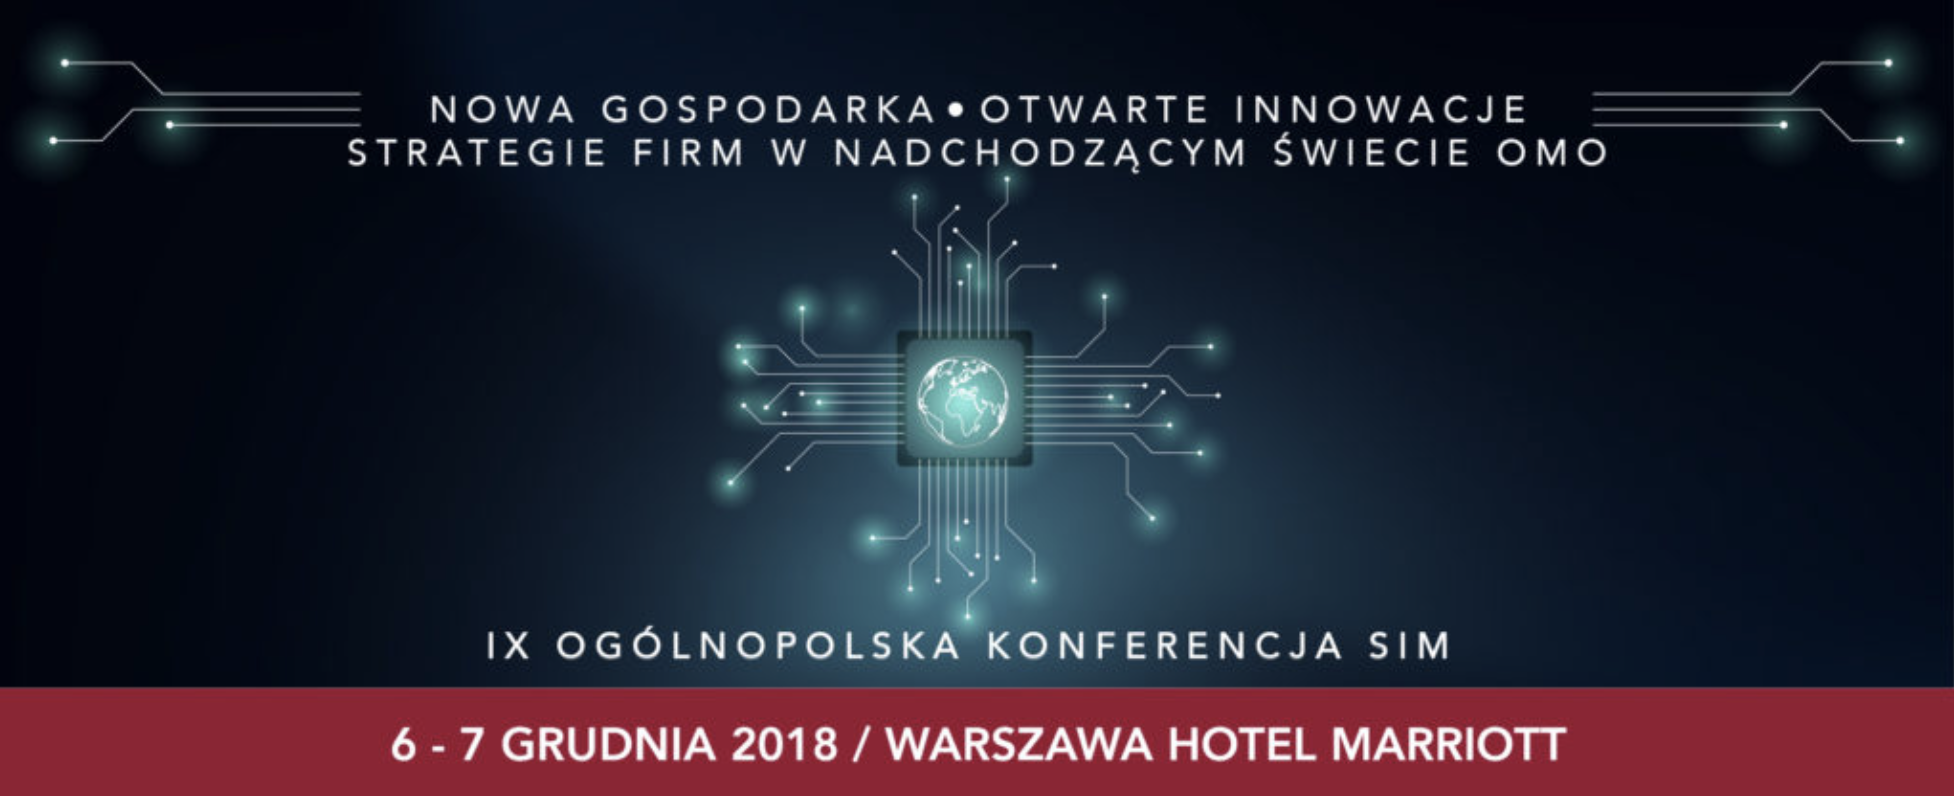 Konferencja SIM Norbert Biedrzycki